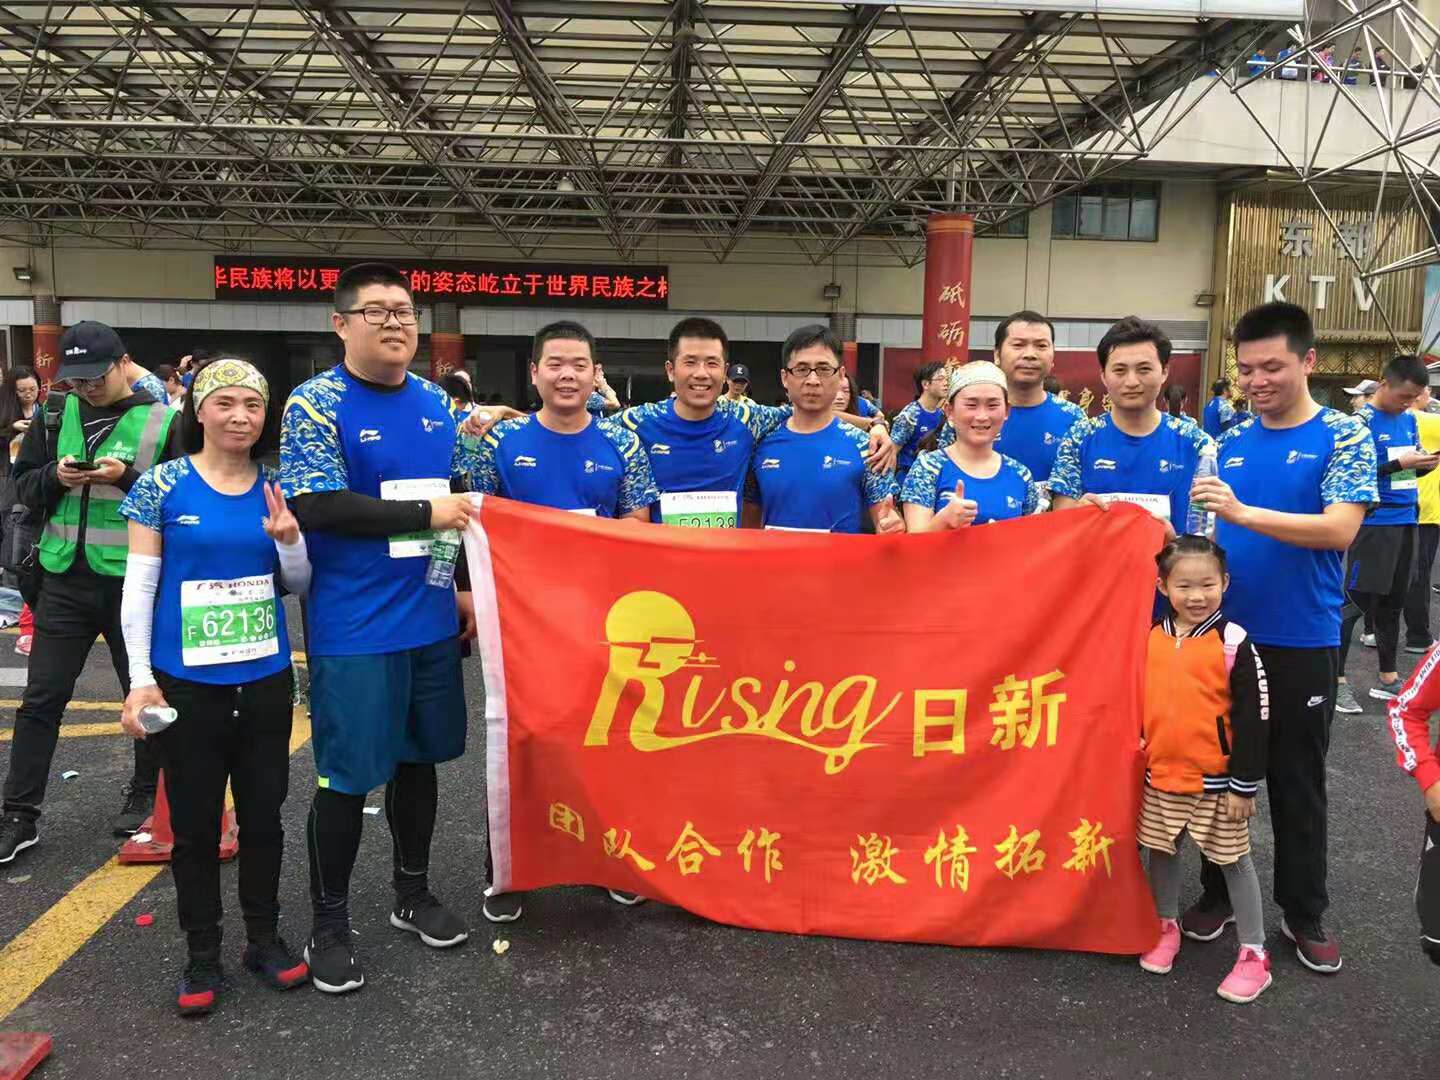 杭州日新小伙伴热力开跑2018杭州马拉松